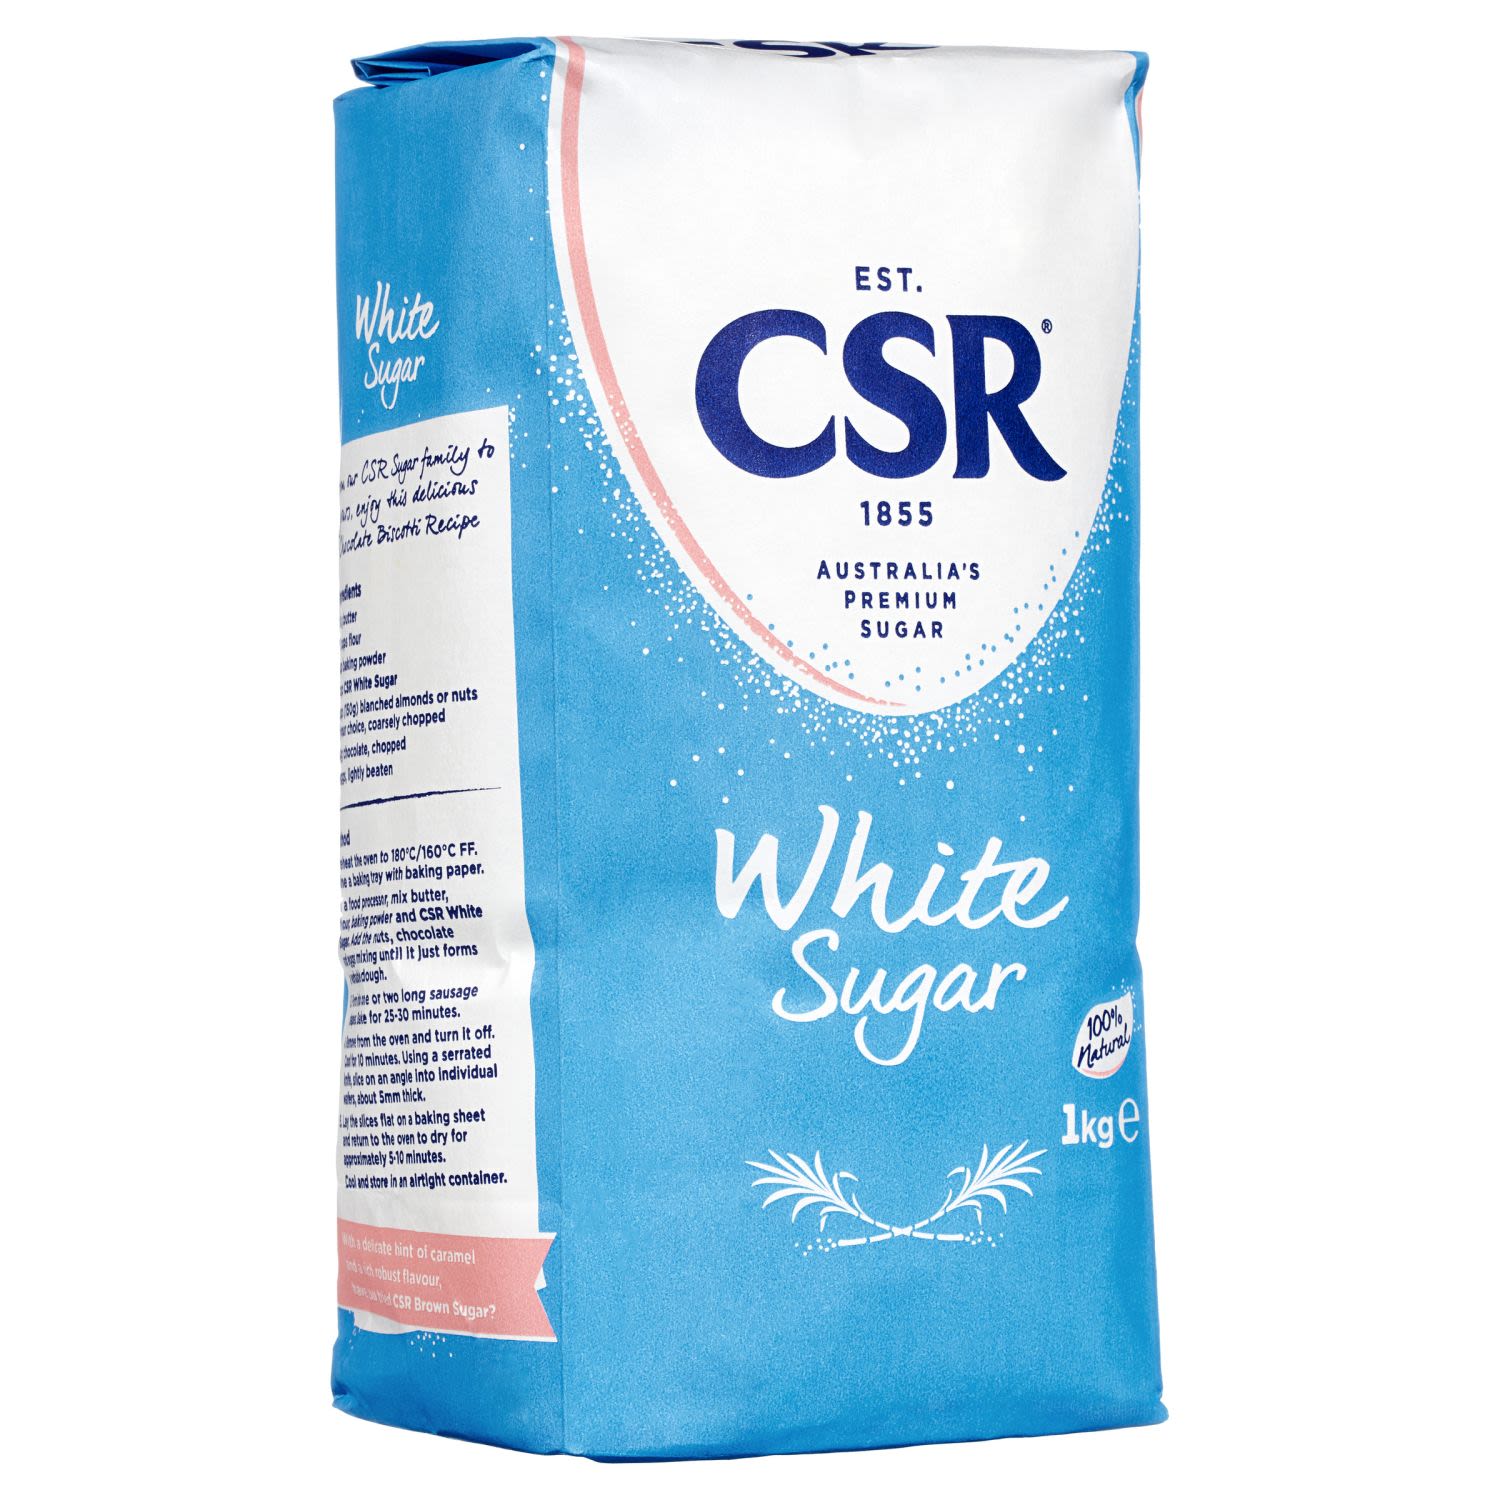 CSR White Sugar, 1 Kilogram